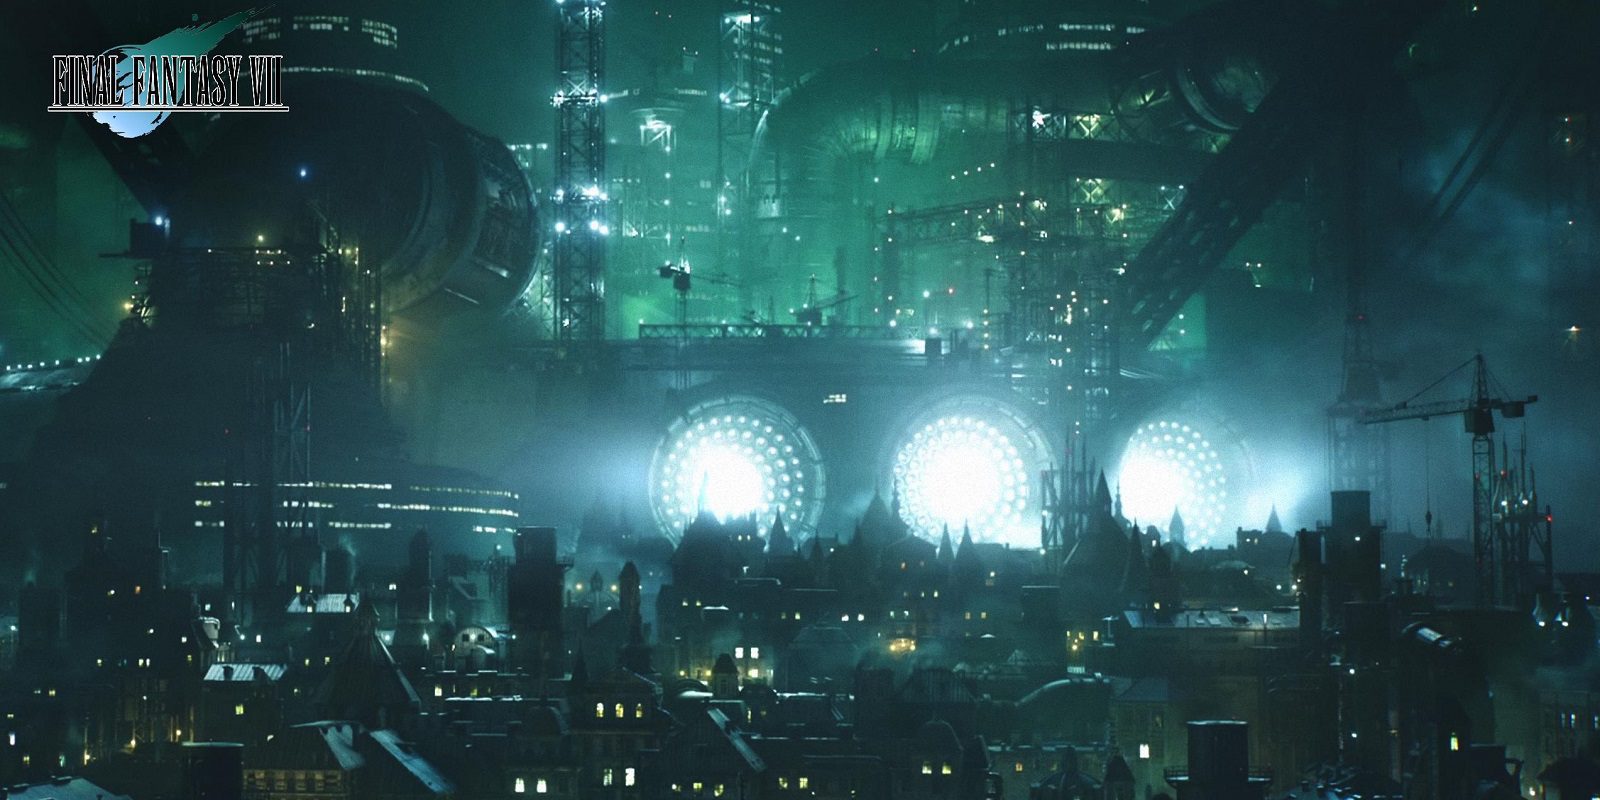 Las 5 localizaciones de 'Final Fantasy VII' que estoy deseando ver en el remake - La Zona